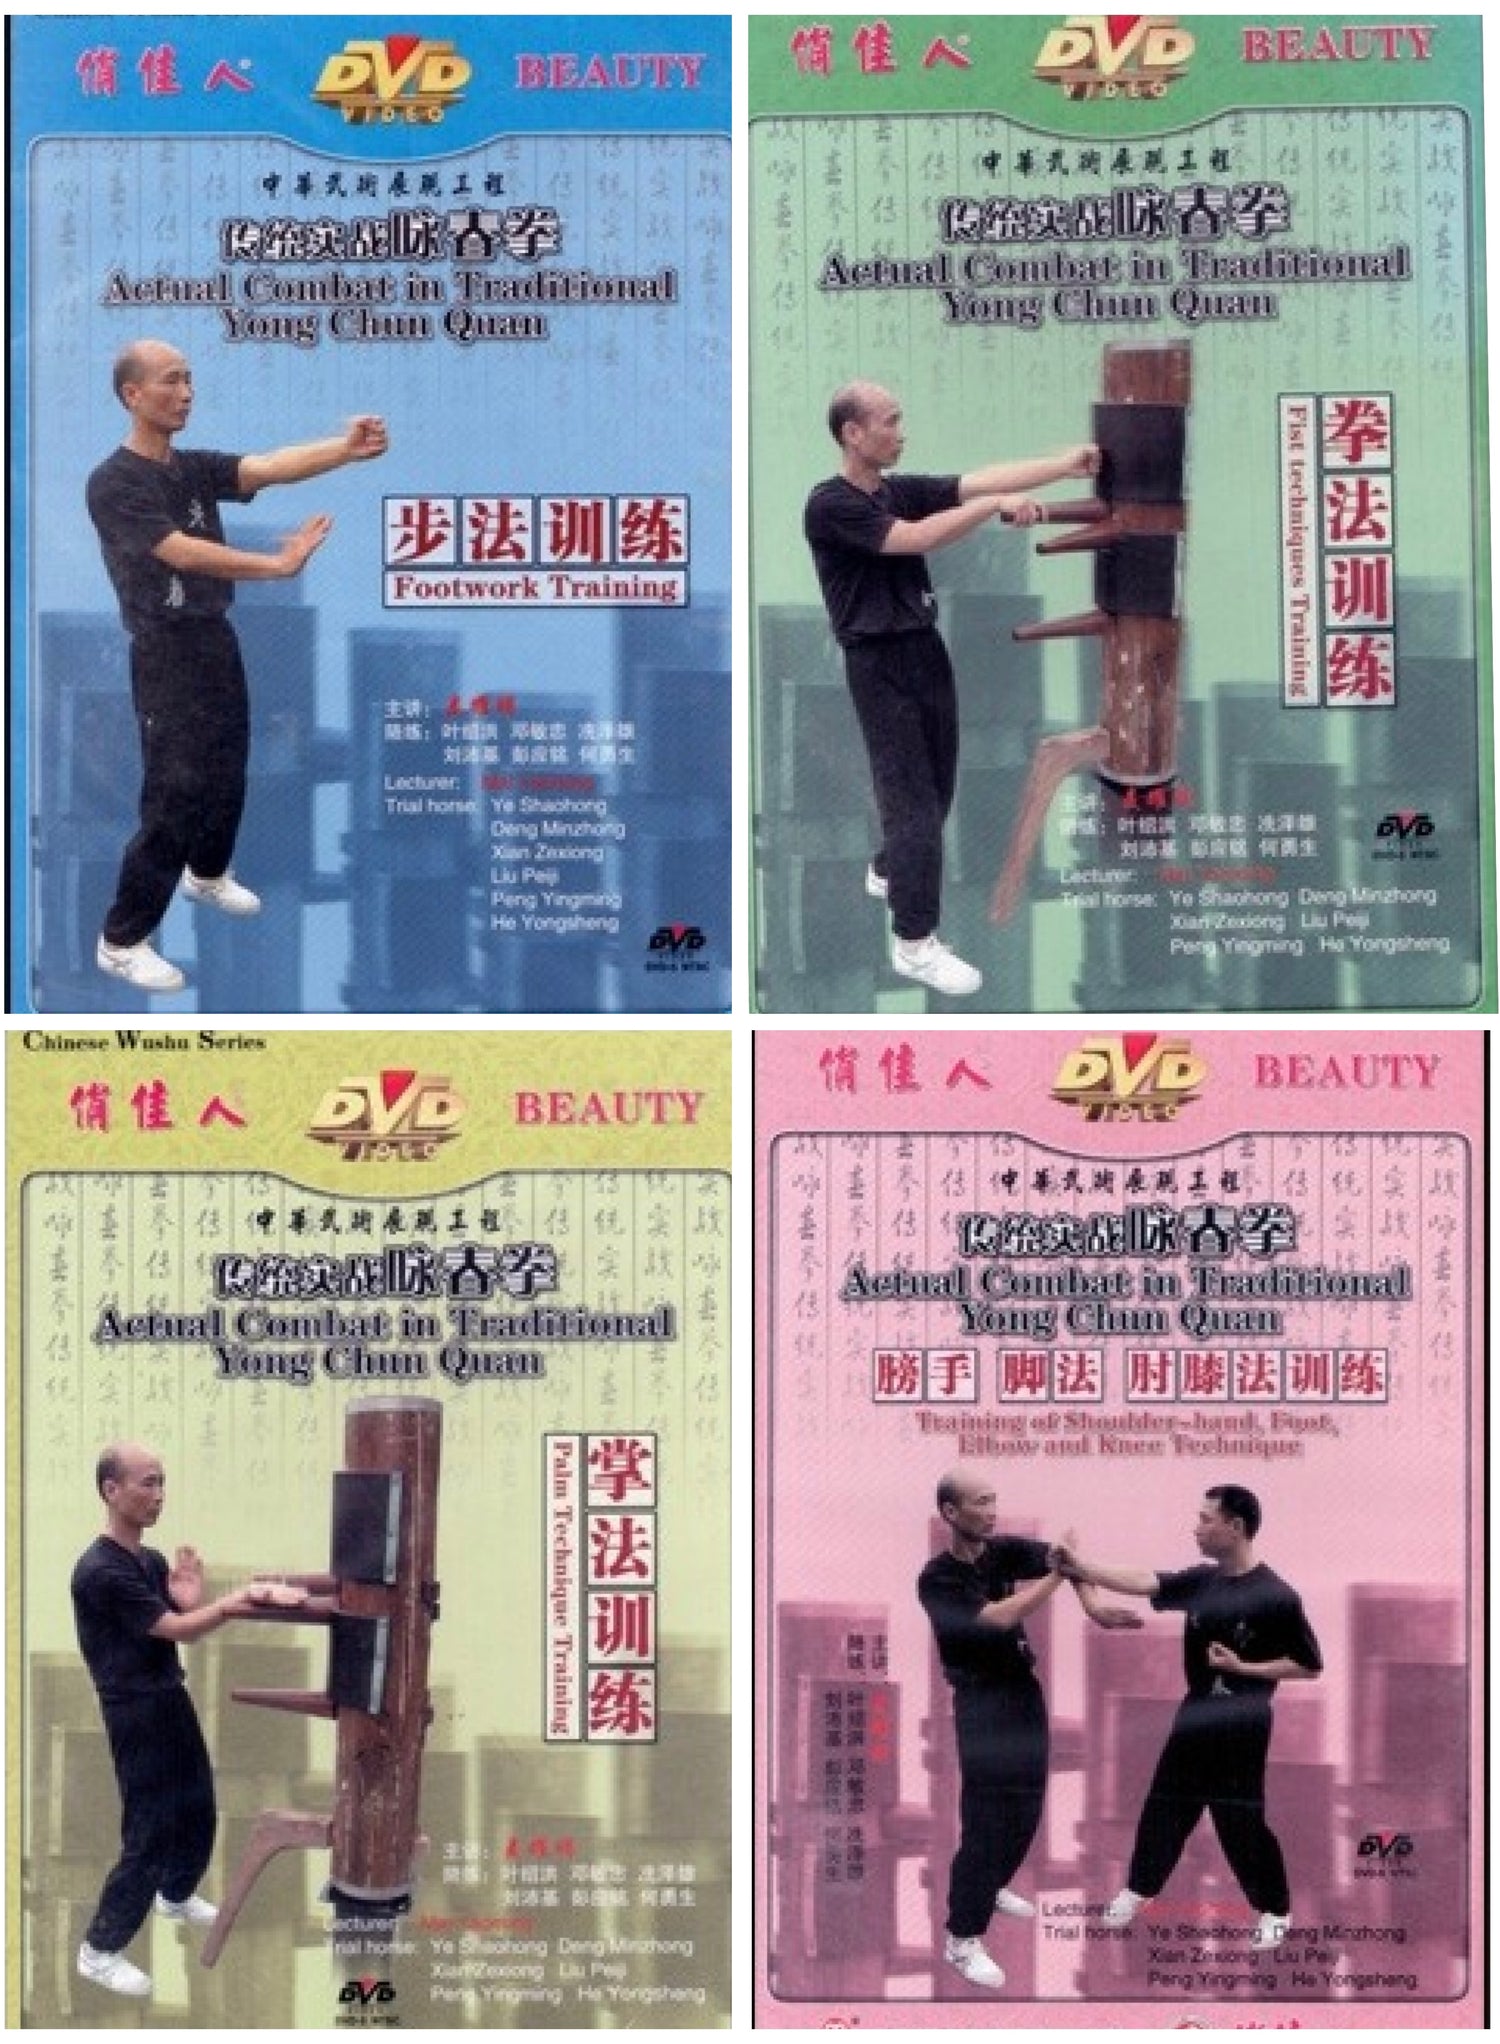 Actual Combat in Traditional Yong Chun (Wing Chun) Quan 4 DVD Set by Mai Yaoming